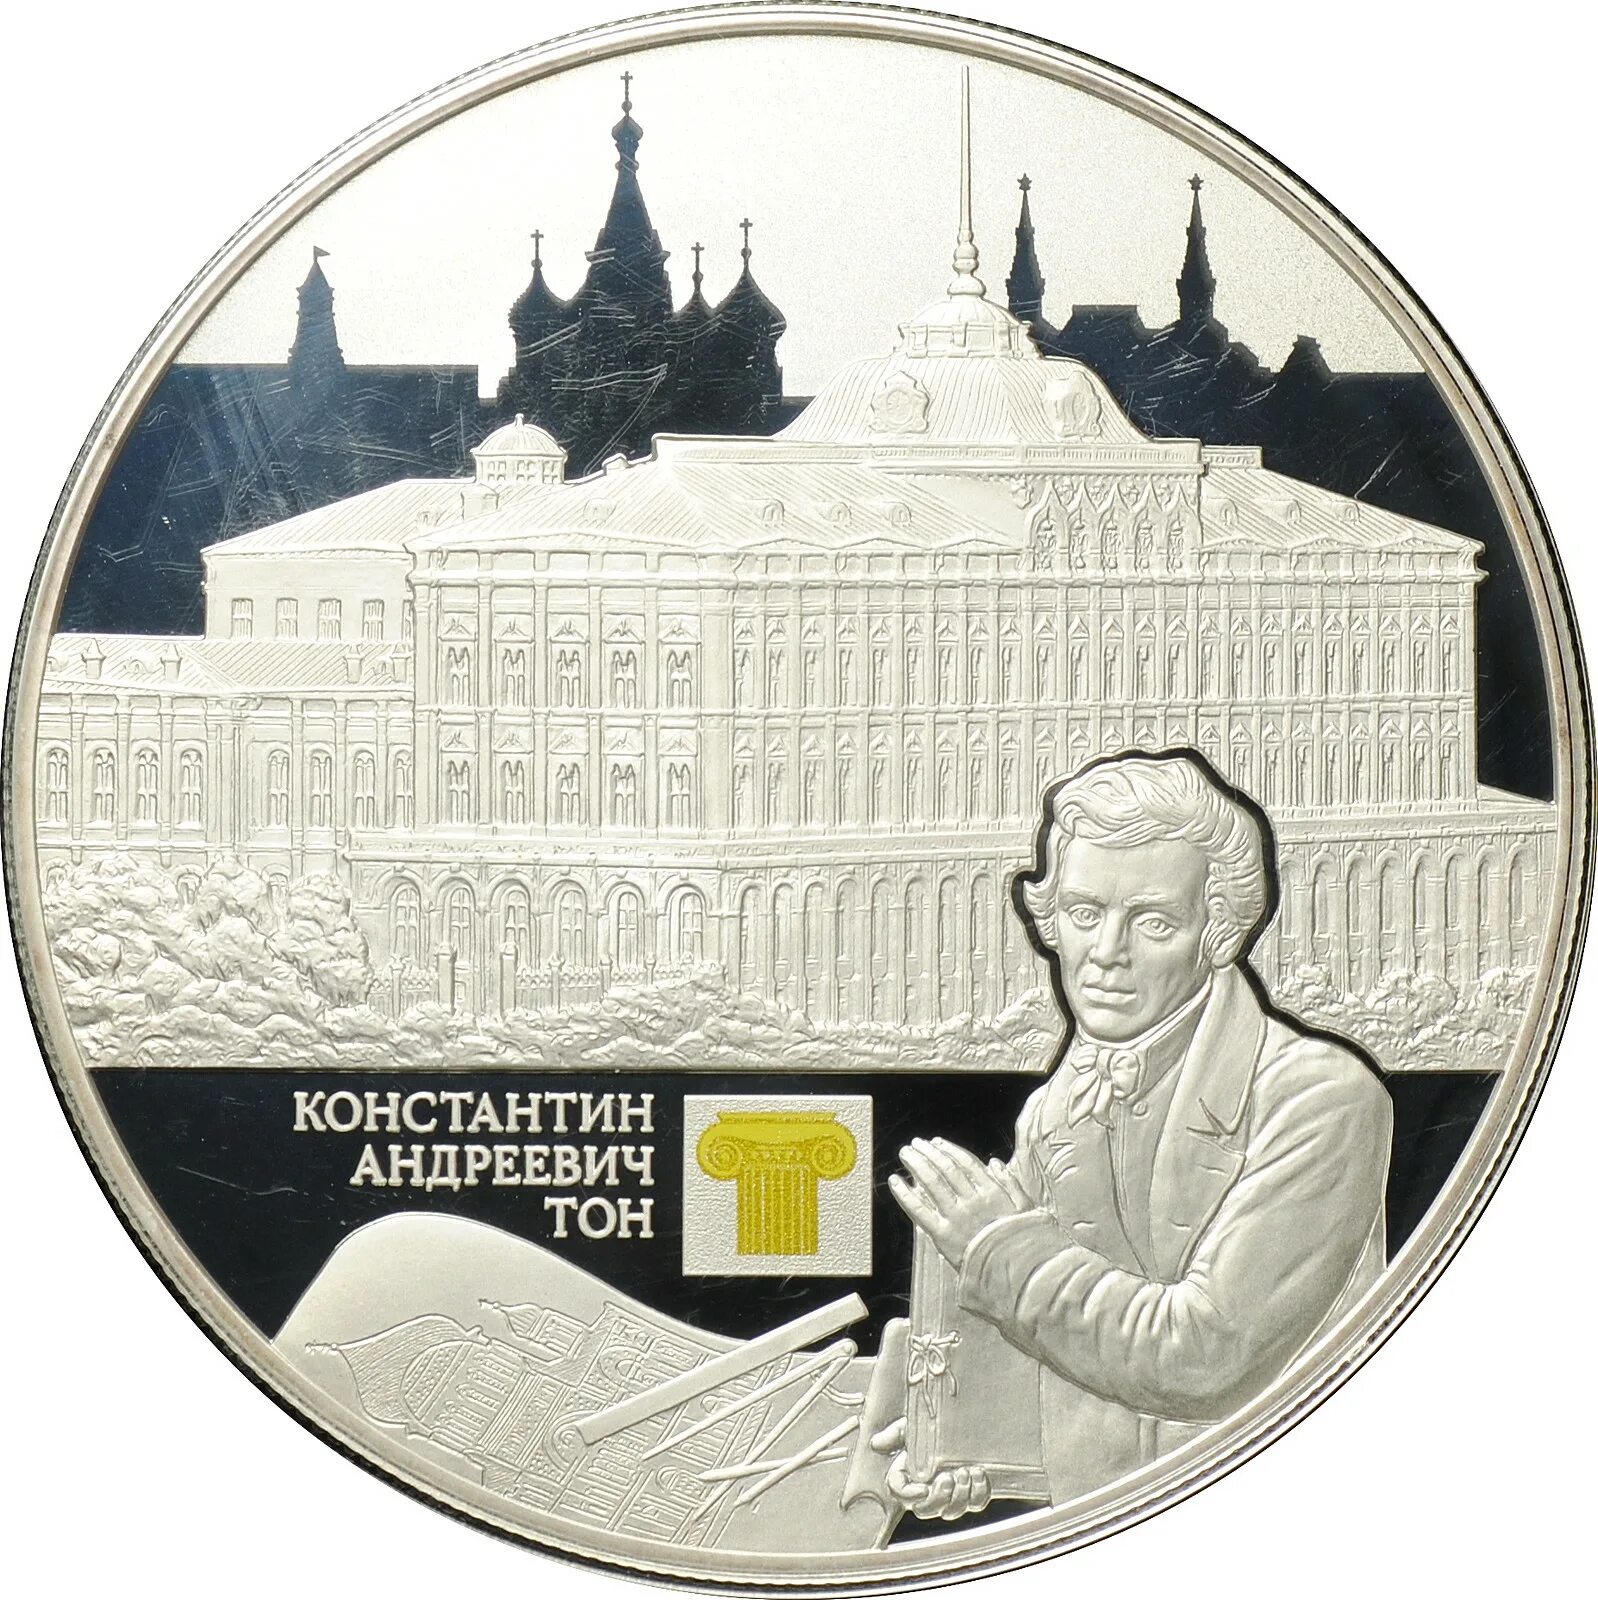 Монета ton. Архитектура на монетах. Архитектурные шедевры России монеты.